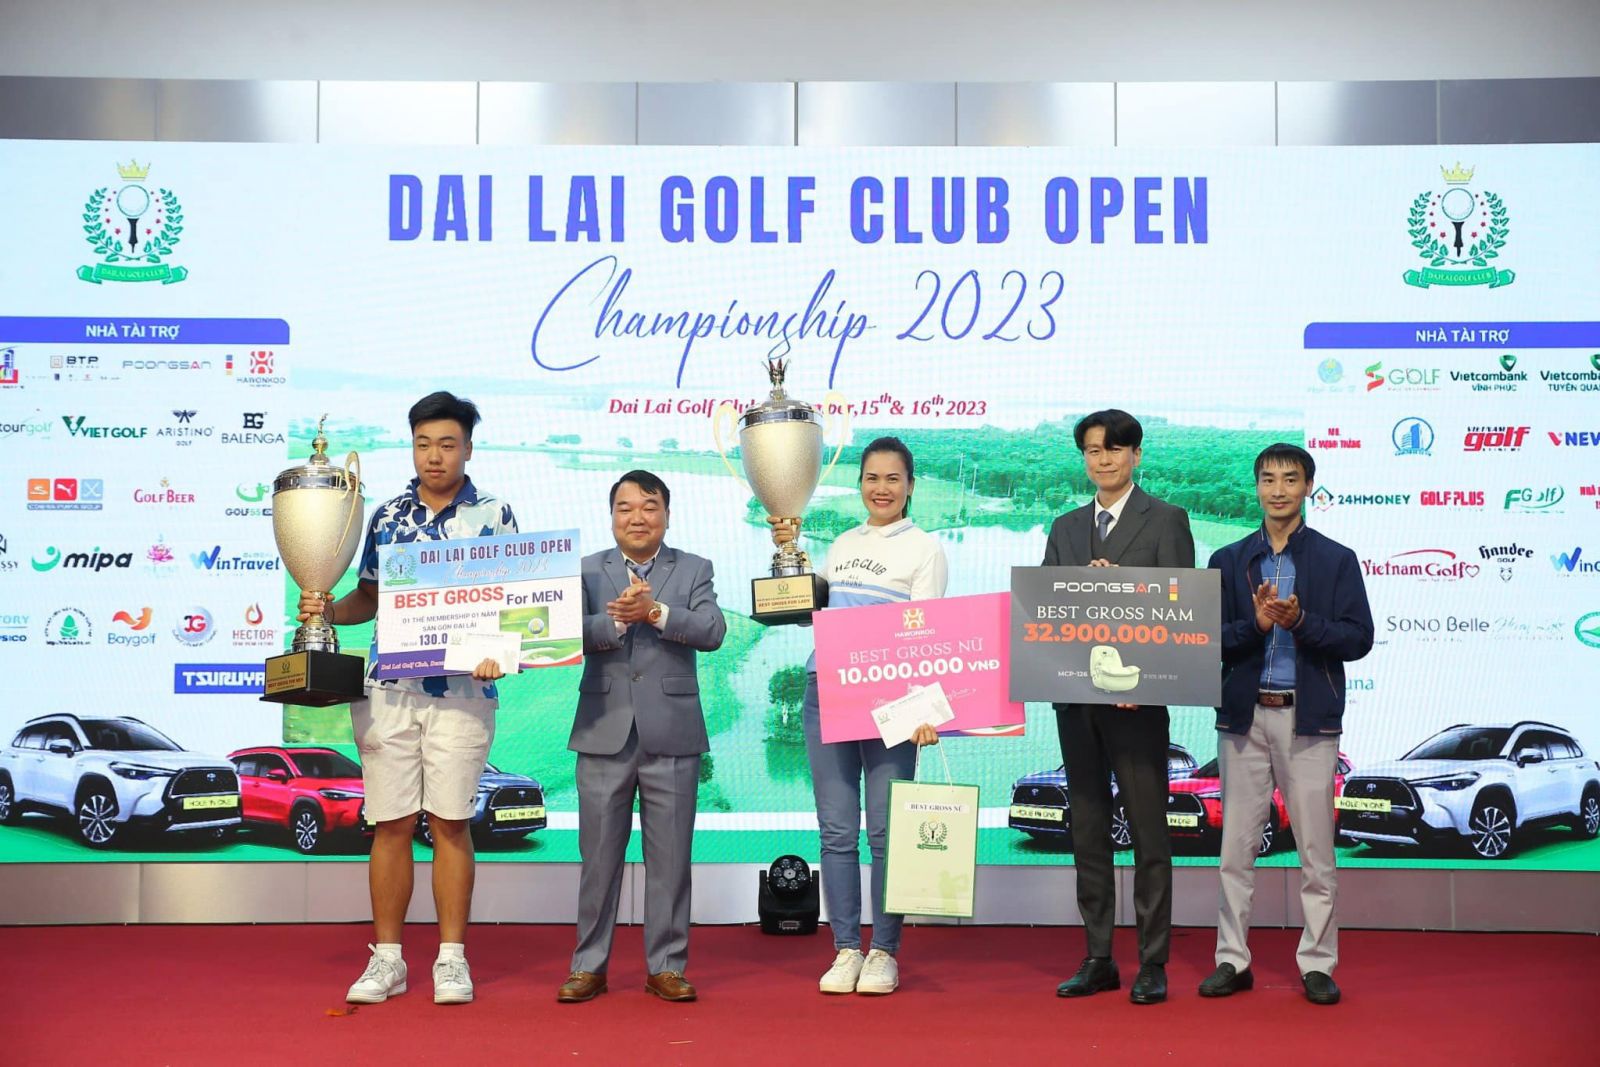 Nguyễn Đặng Minh, Nguyễn Tuyết Chinh Vô Địch Đại Lải Golf Club Open Championship 2023